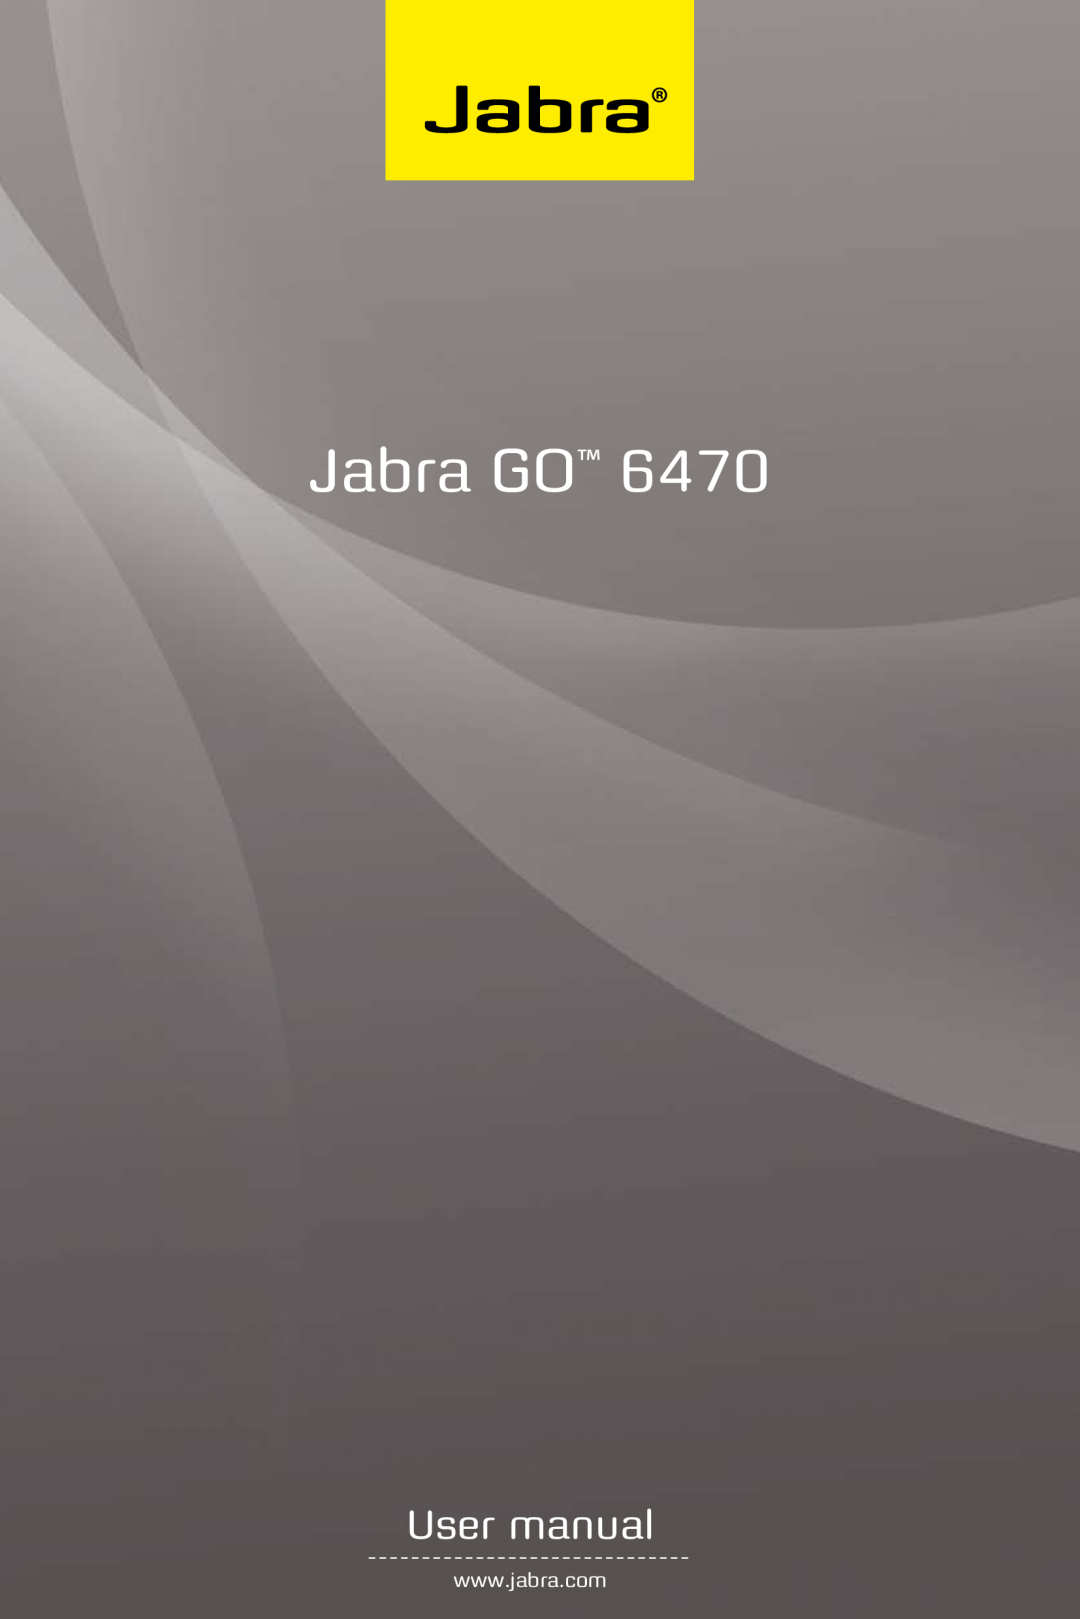 Jabra GO 6470 user manual Jabra GO, User manual 